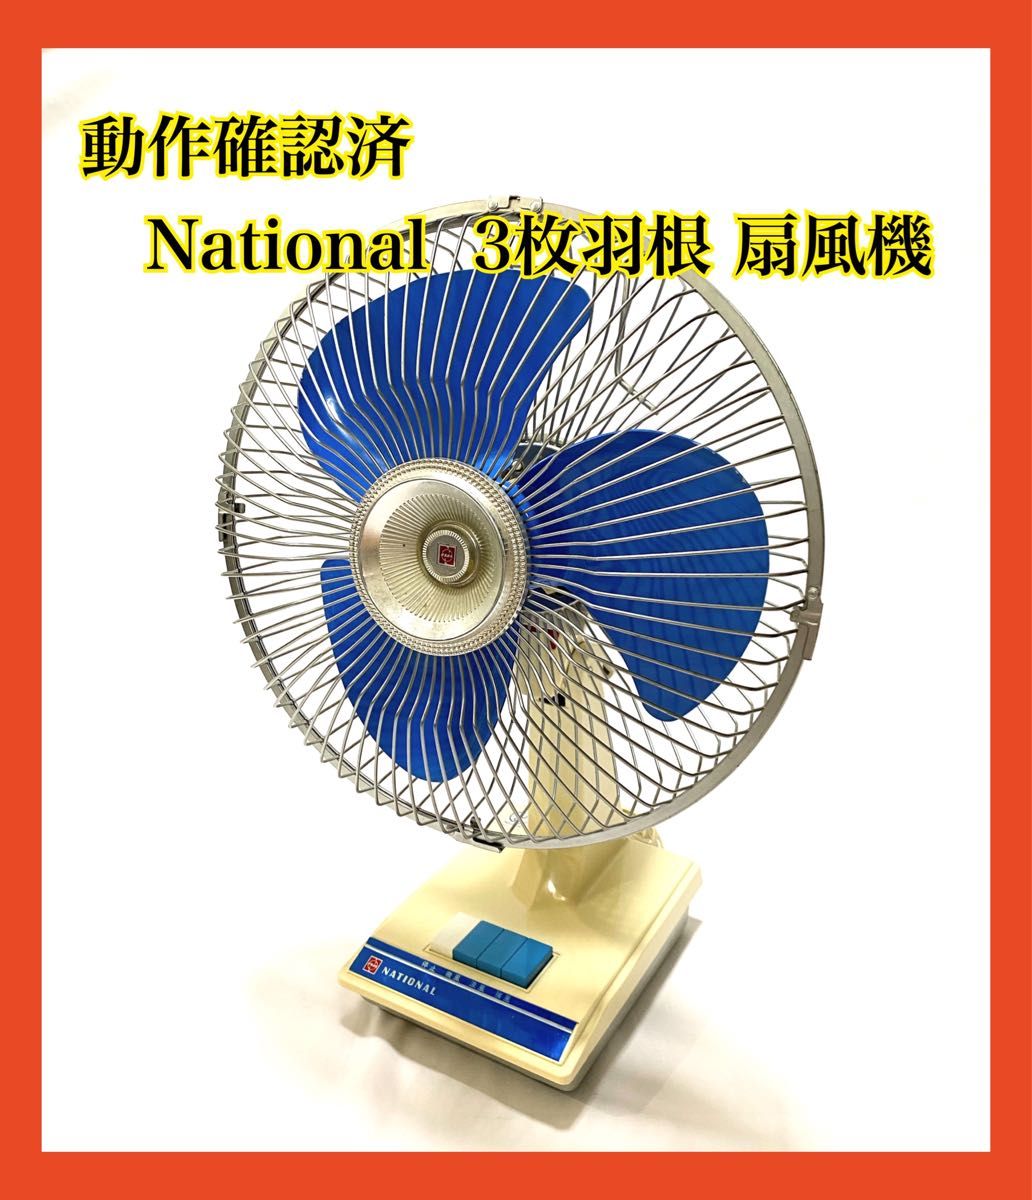 ☆昭和レトロ 扇風機 National ナショナル - 季節、空調家電